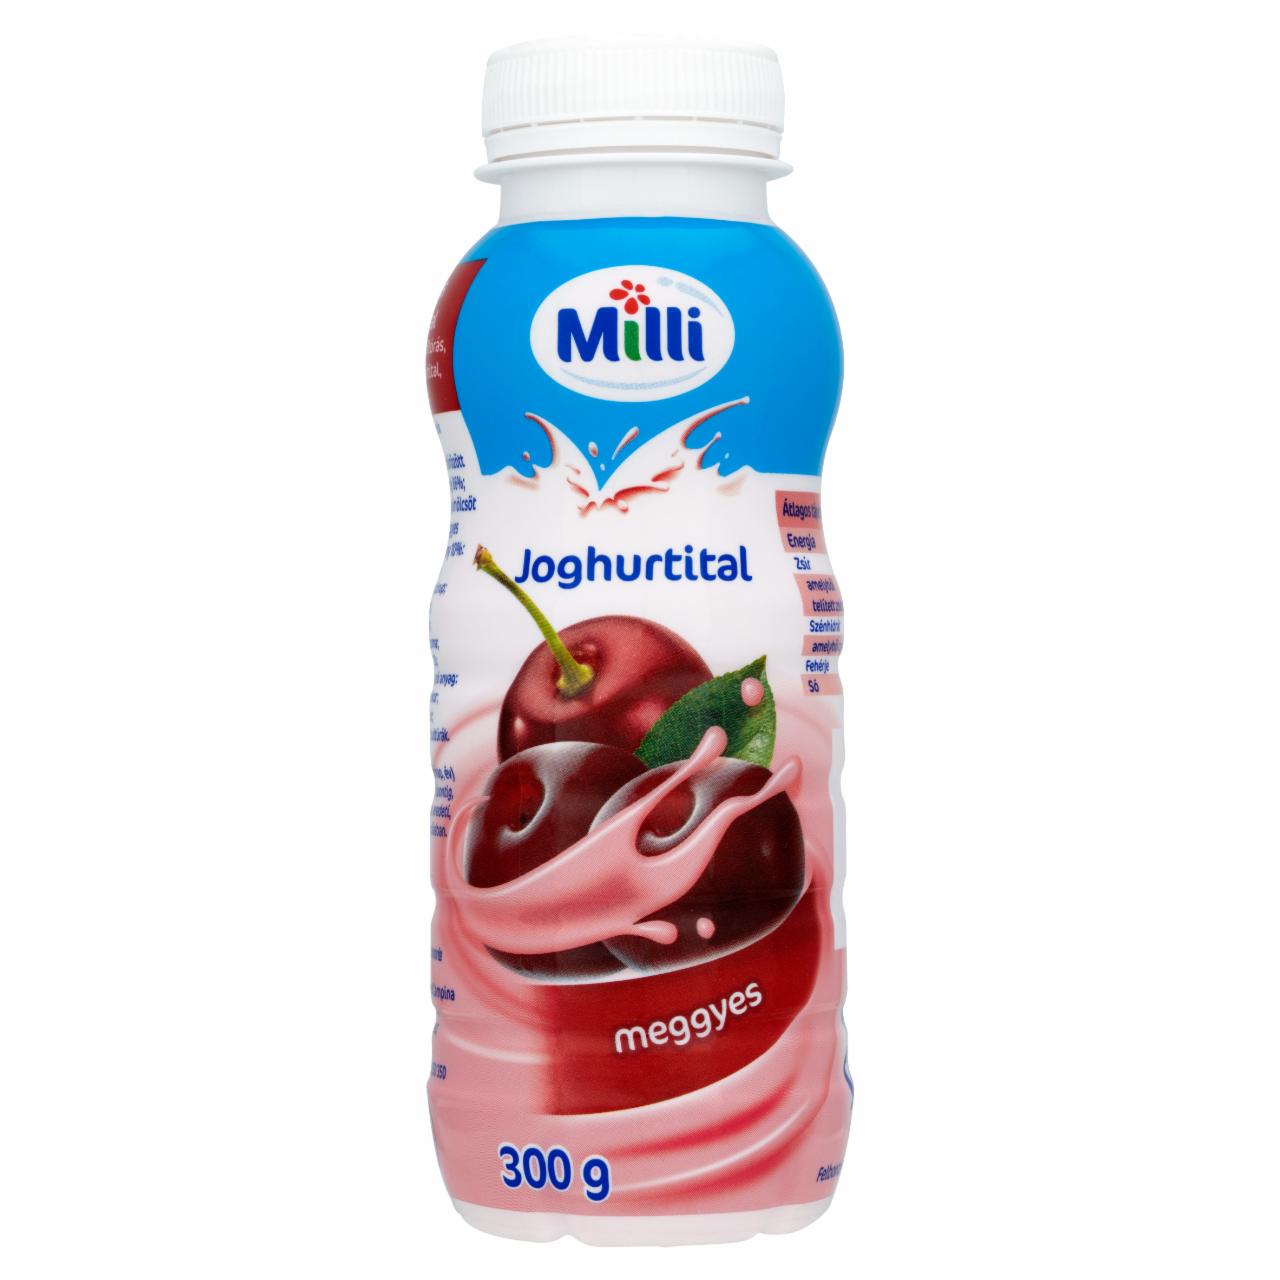 Képek - Milli meggyes joghurtital 300 g